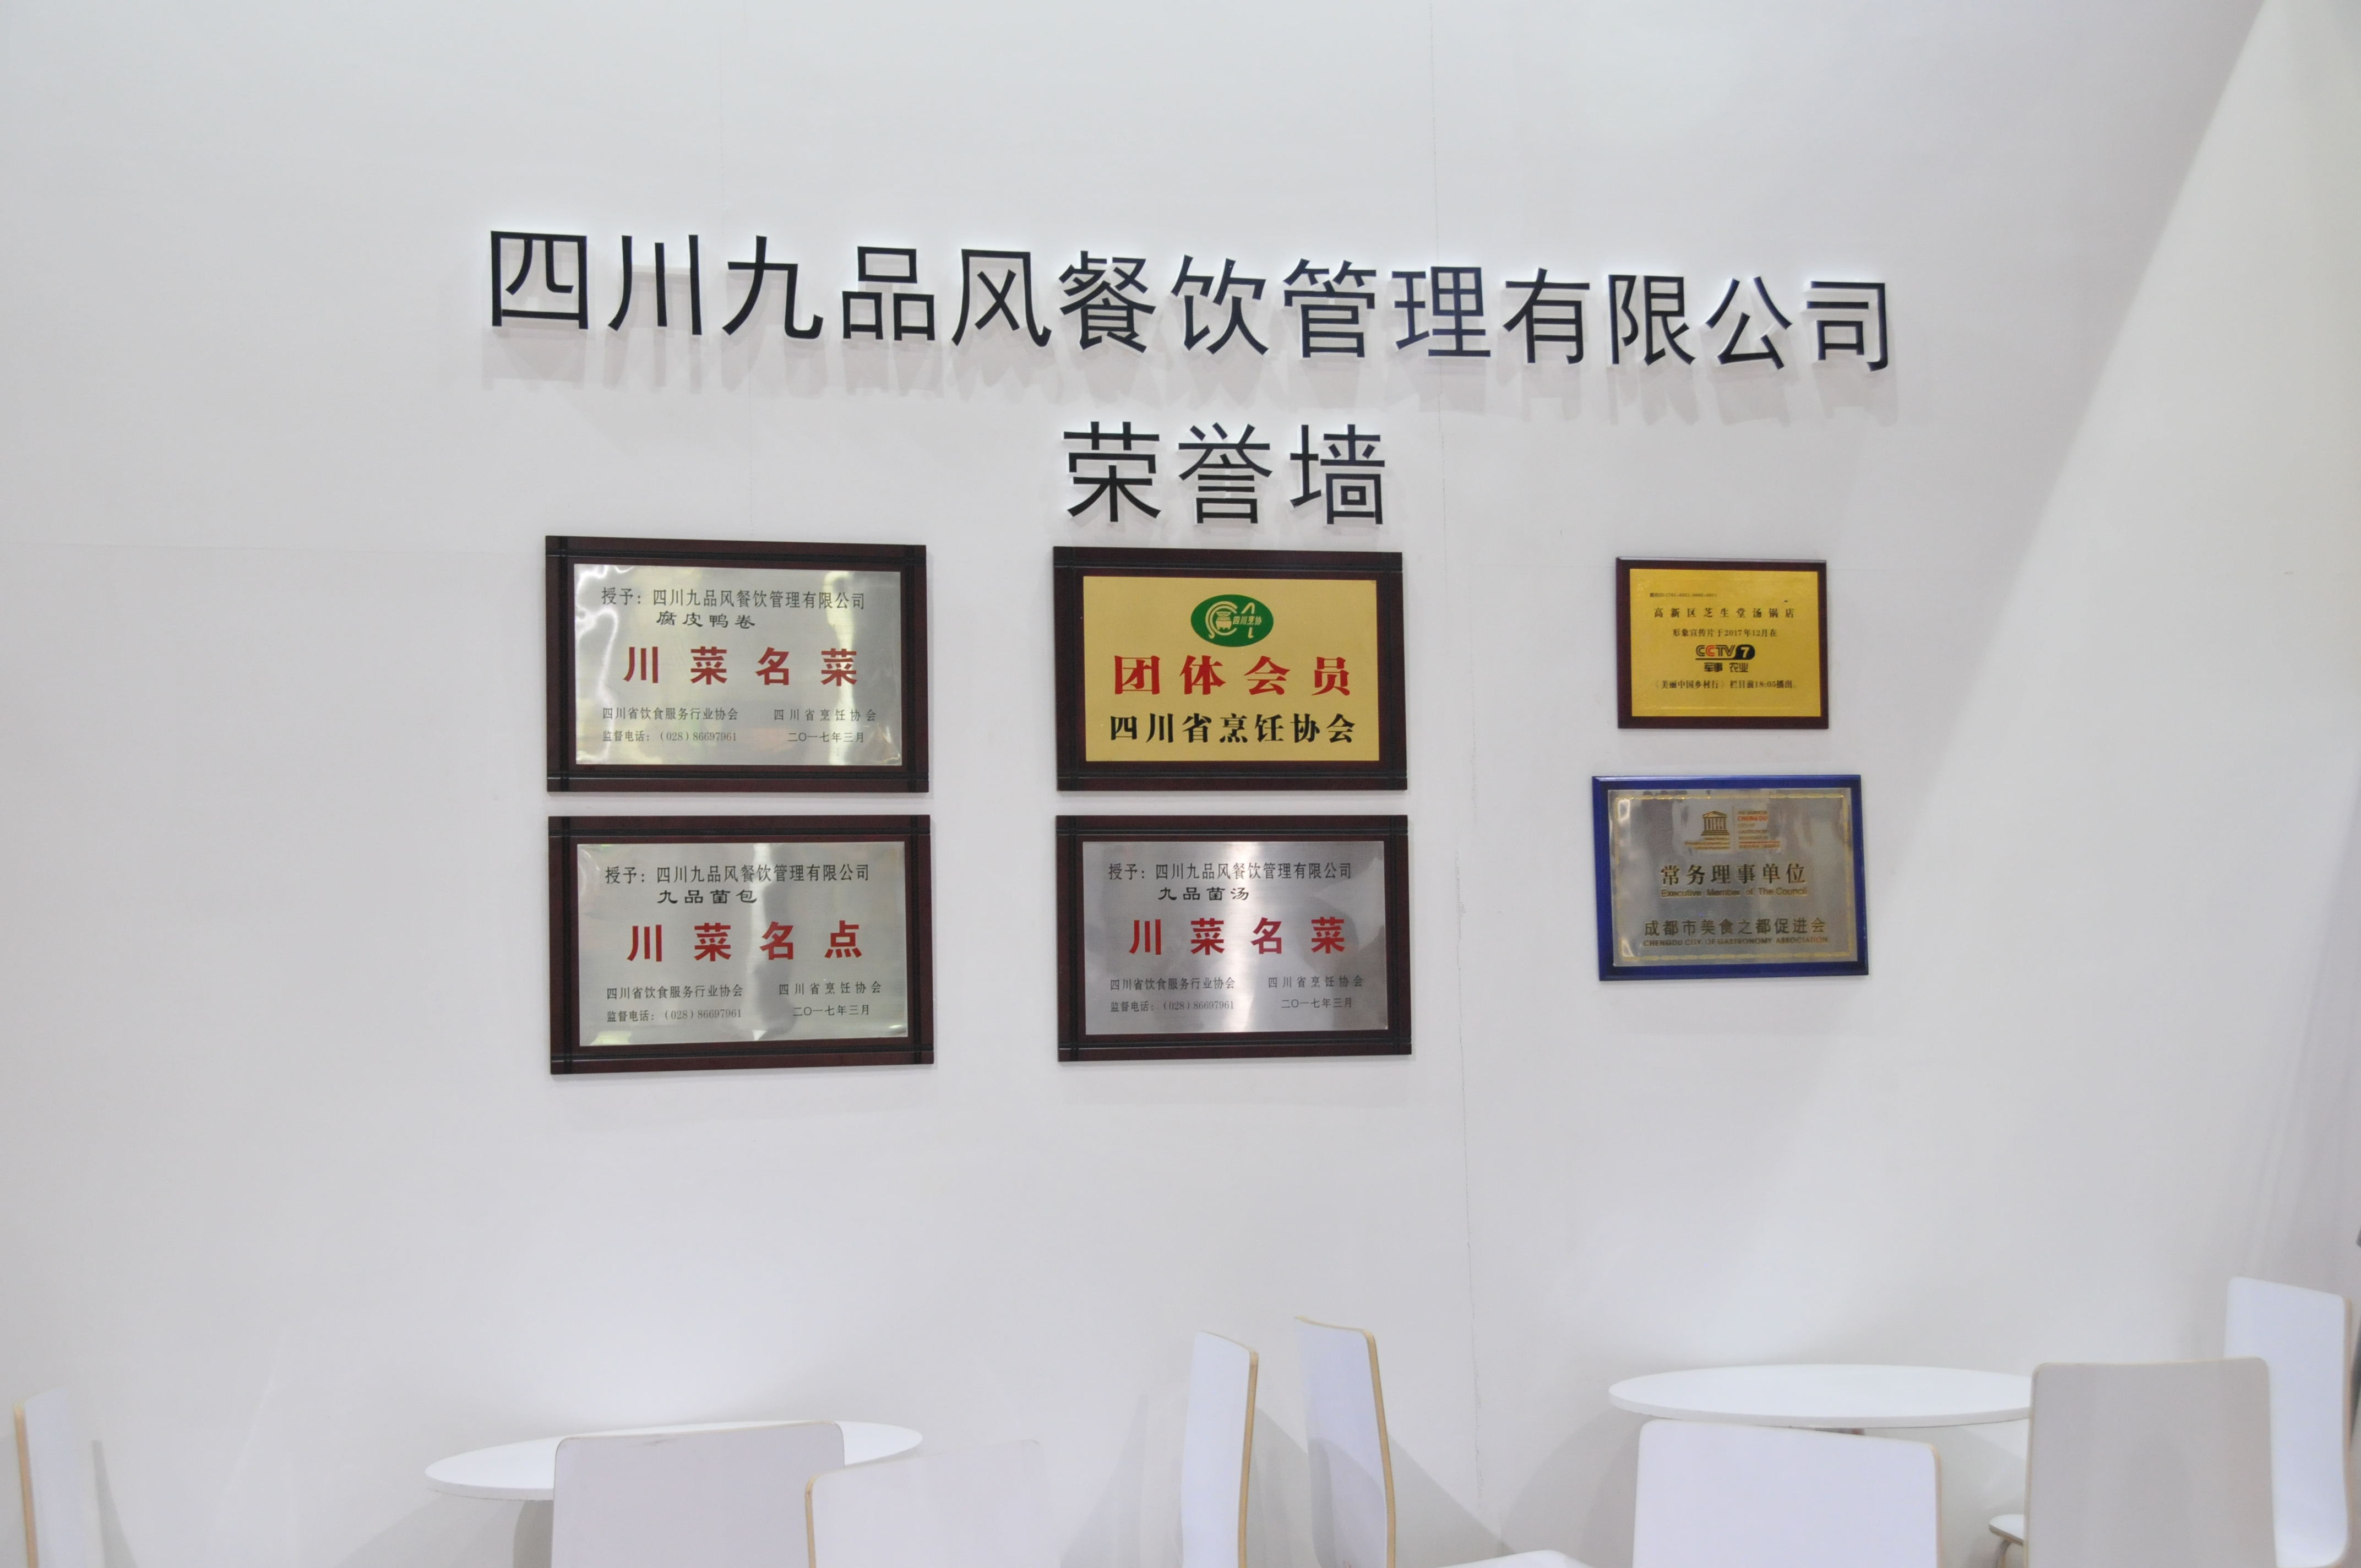 芝生(shēng)堂于2018年8月24-26日參加廣州國際加盟展